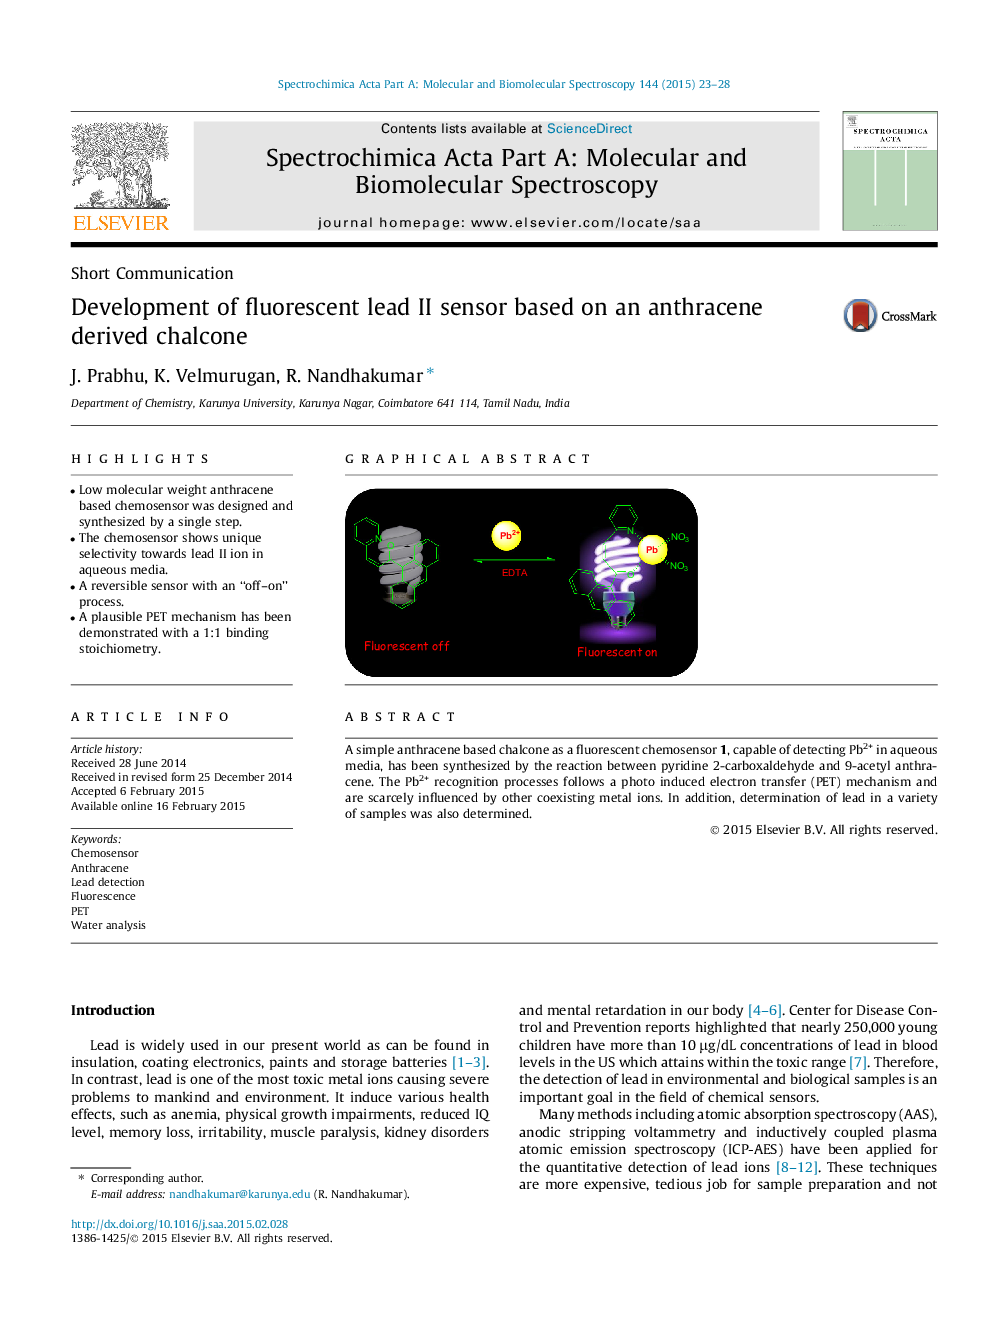 توسعه حسگر فلورسنت دوم، بر اساس کلسینه مشتق شده از آنتراسن 